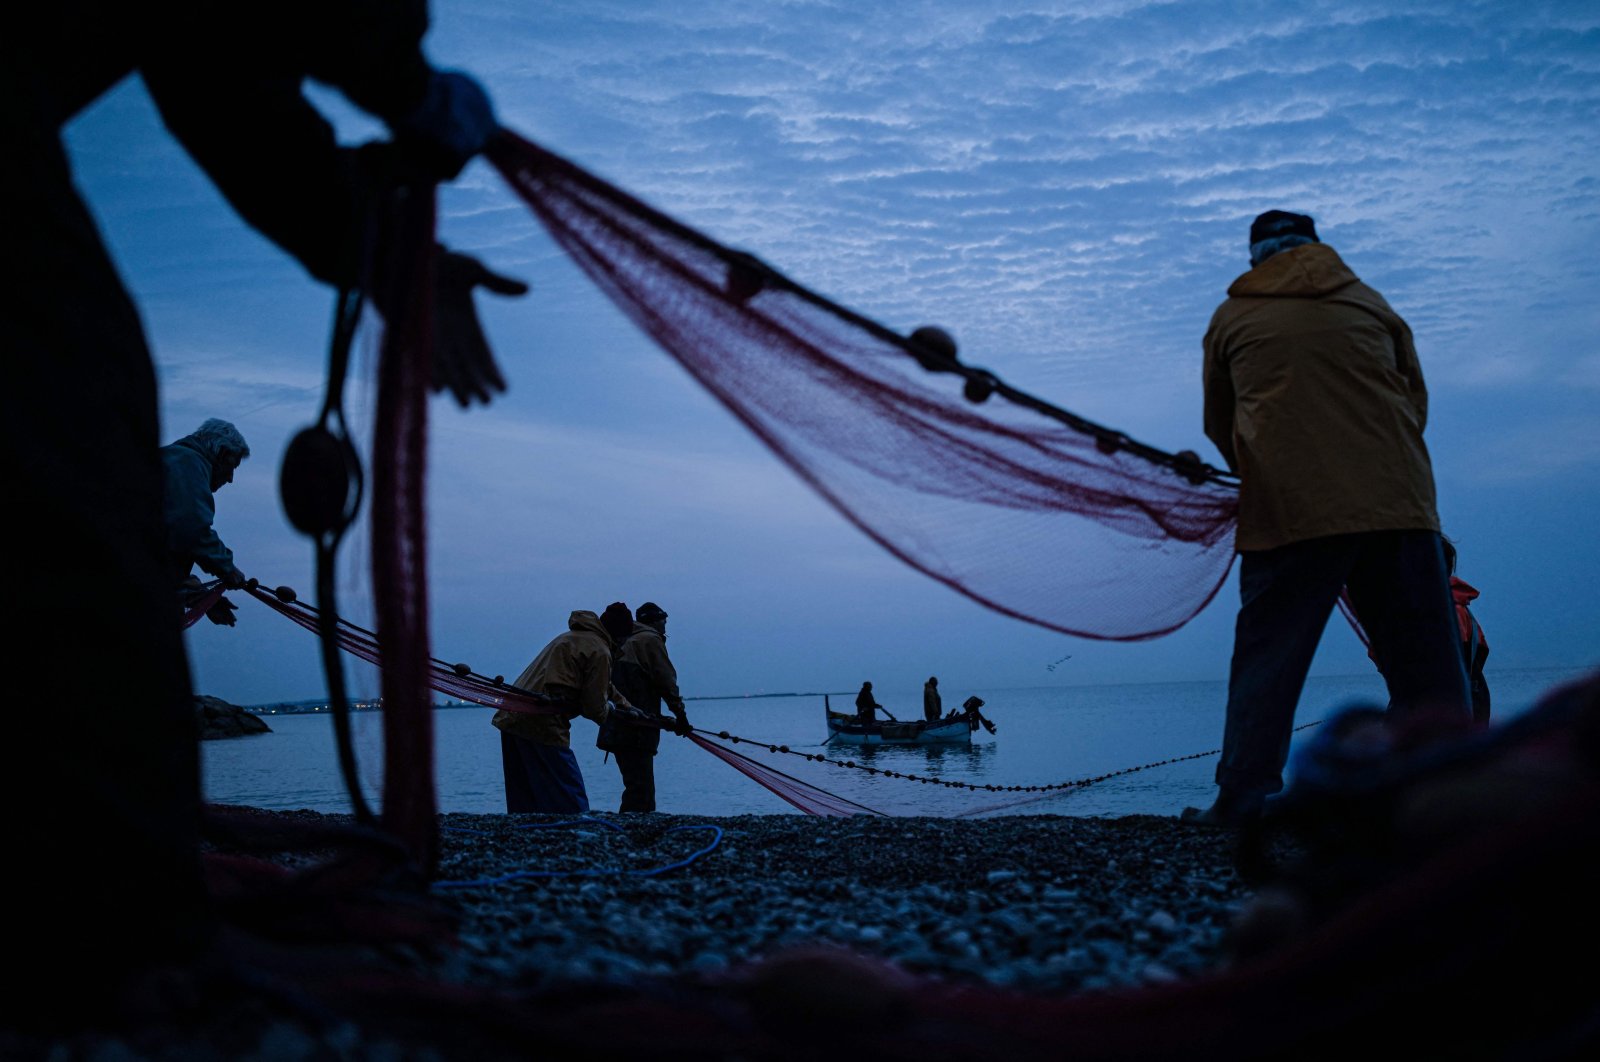 Sengketa penangkapan ikan antara Inggris-Prancis hampir diselesaikan: UE